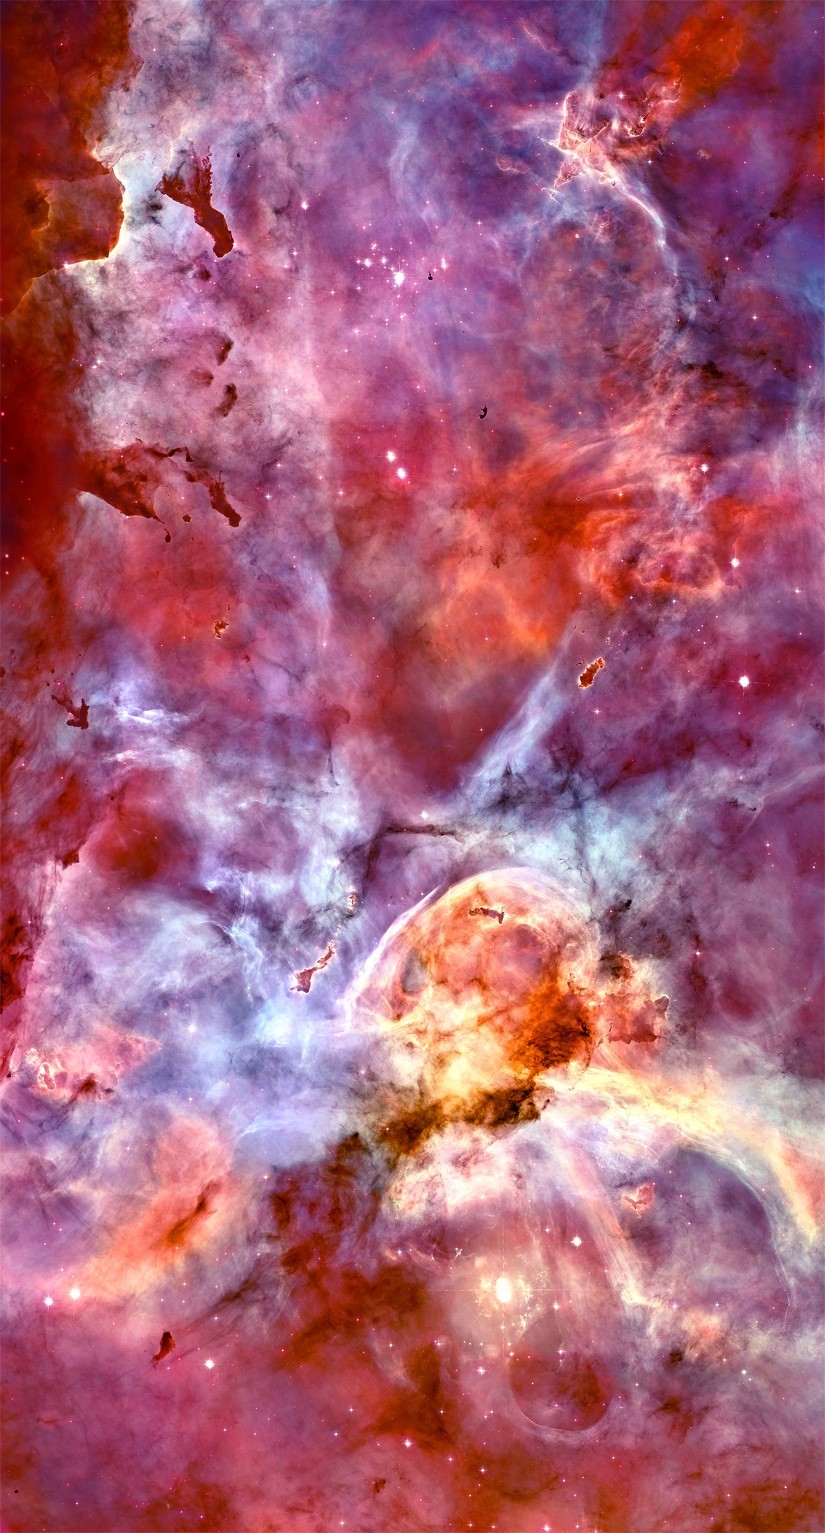 Carina Nebula